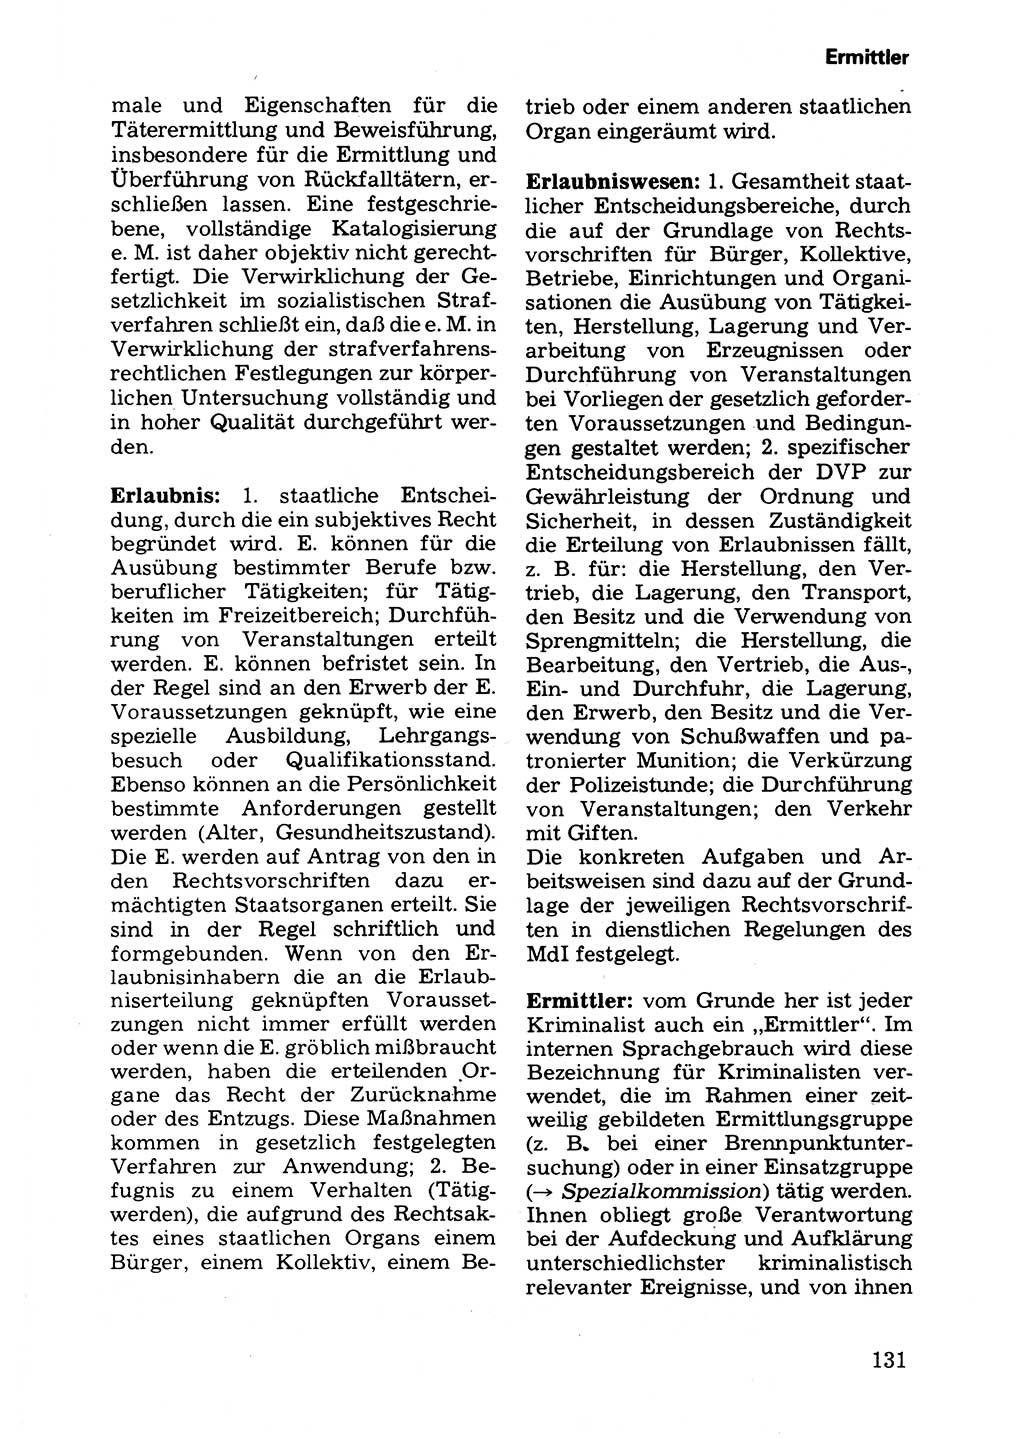 Wörterbuch der sozialistischen Kriminalistik [Deutsche Demokratische Republik (DDR)] 1981, Seite 131 (Wb. soz. Krim. DDR 1981, S. 131)